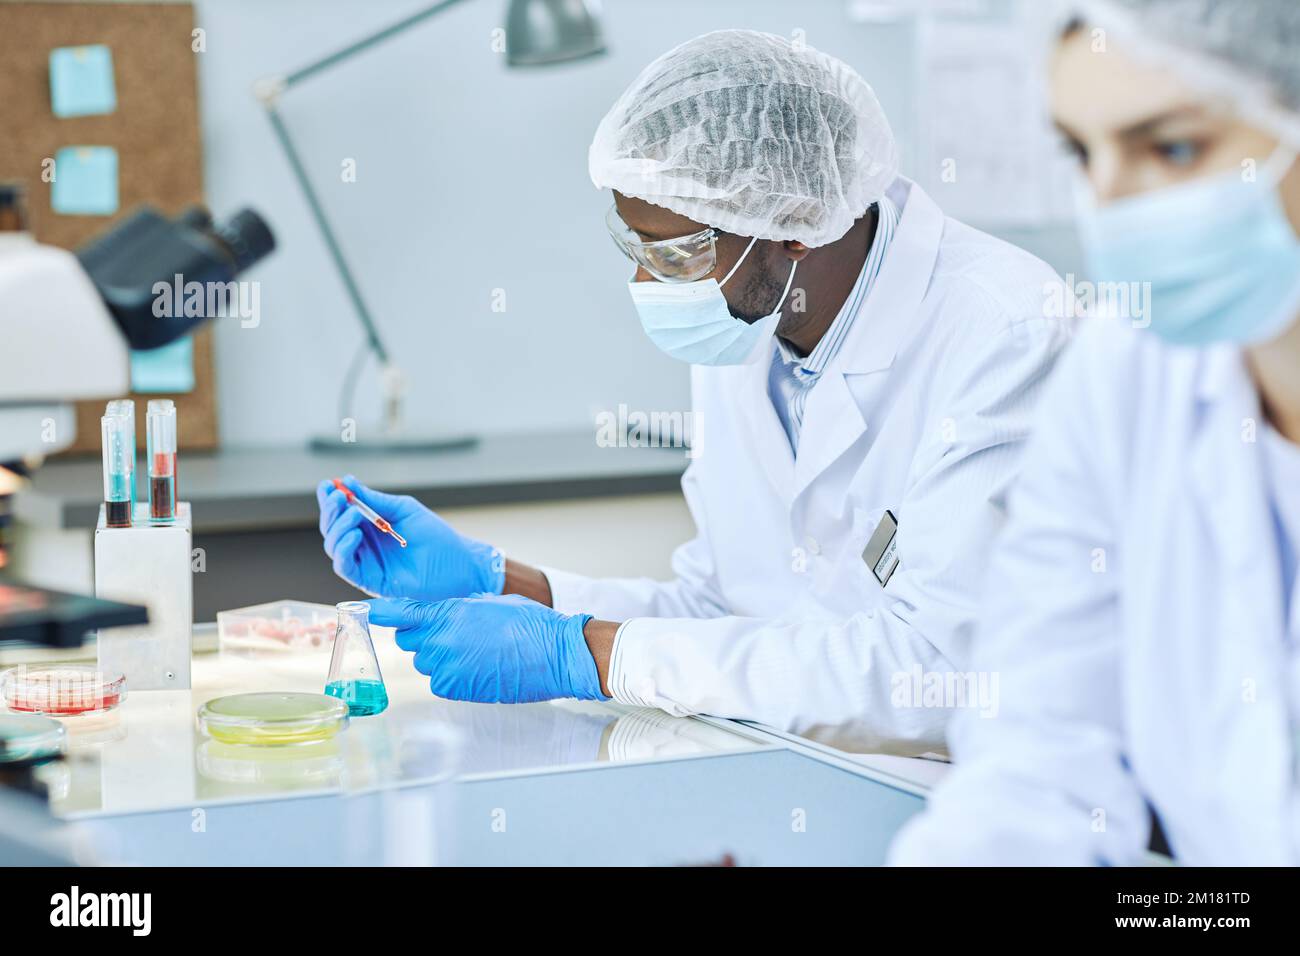 Vue latérale d'un homme noir travaillant dans un laboratoire moderne et effectuant des analyses de sang Banque D'Images